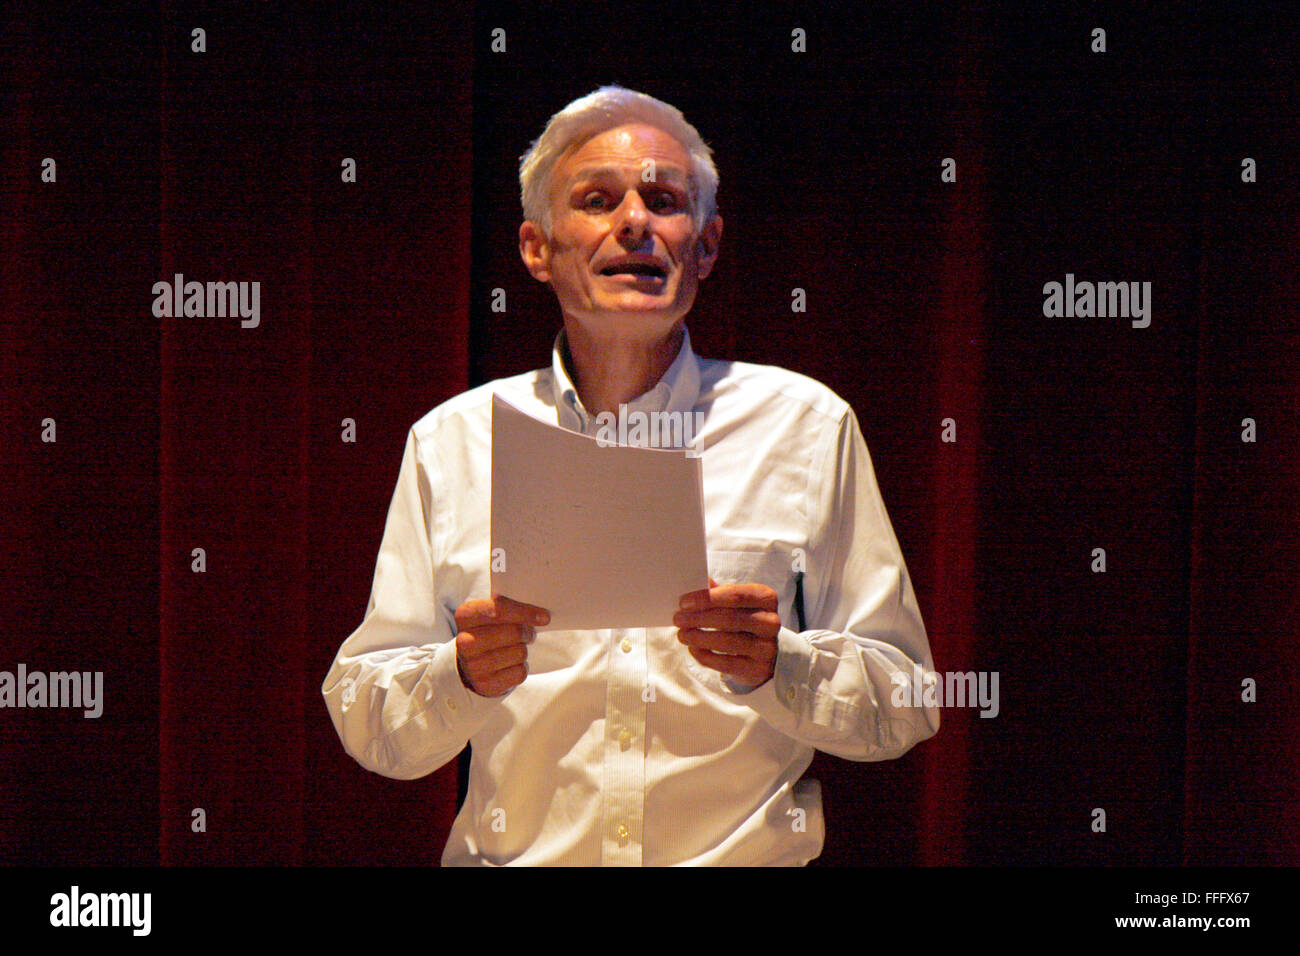 Rainald Goetz - Lesung seines neuen Romans "Johann Holtrop", Deutsches Theater, 26. September 2012, Berlin. Stock Photo